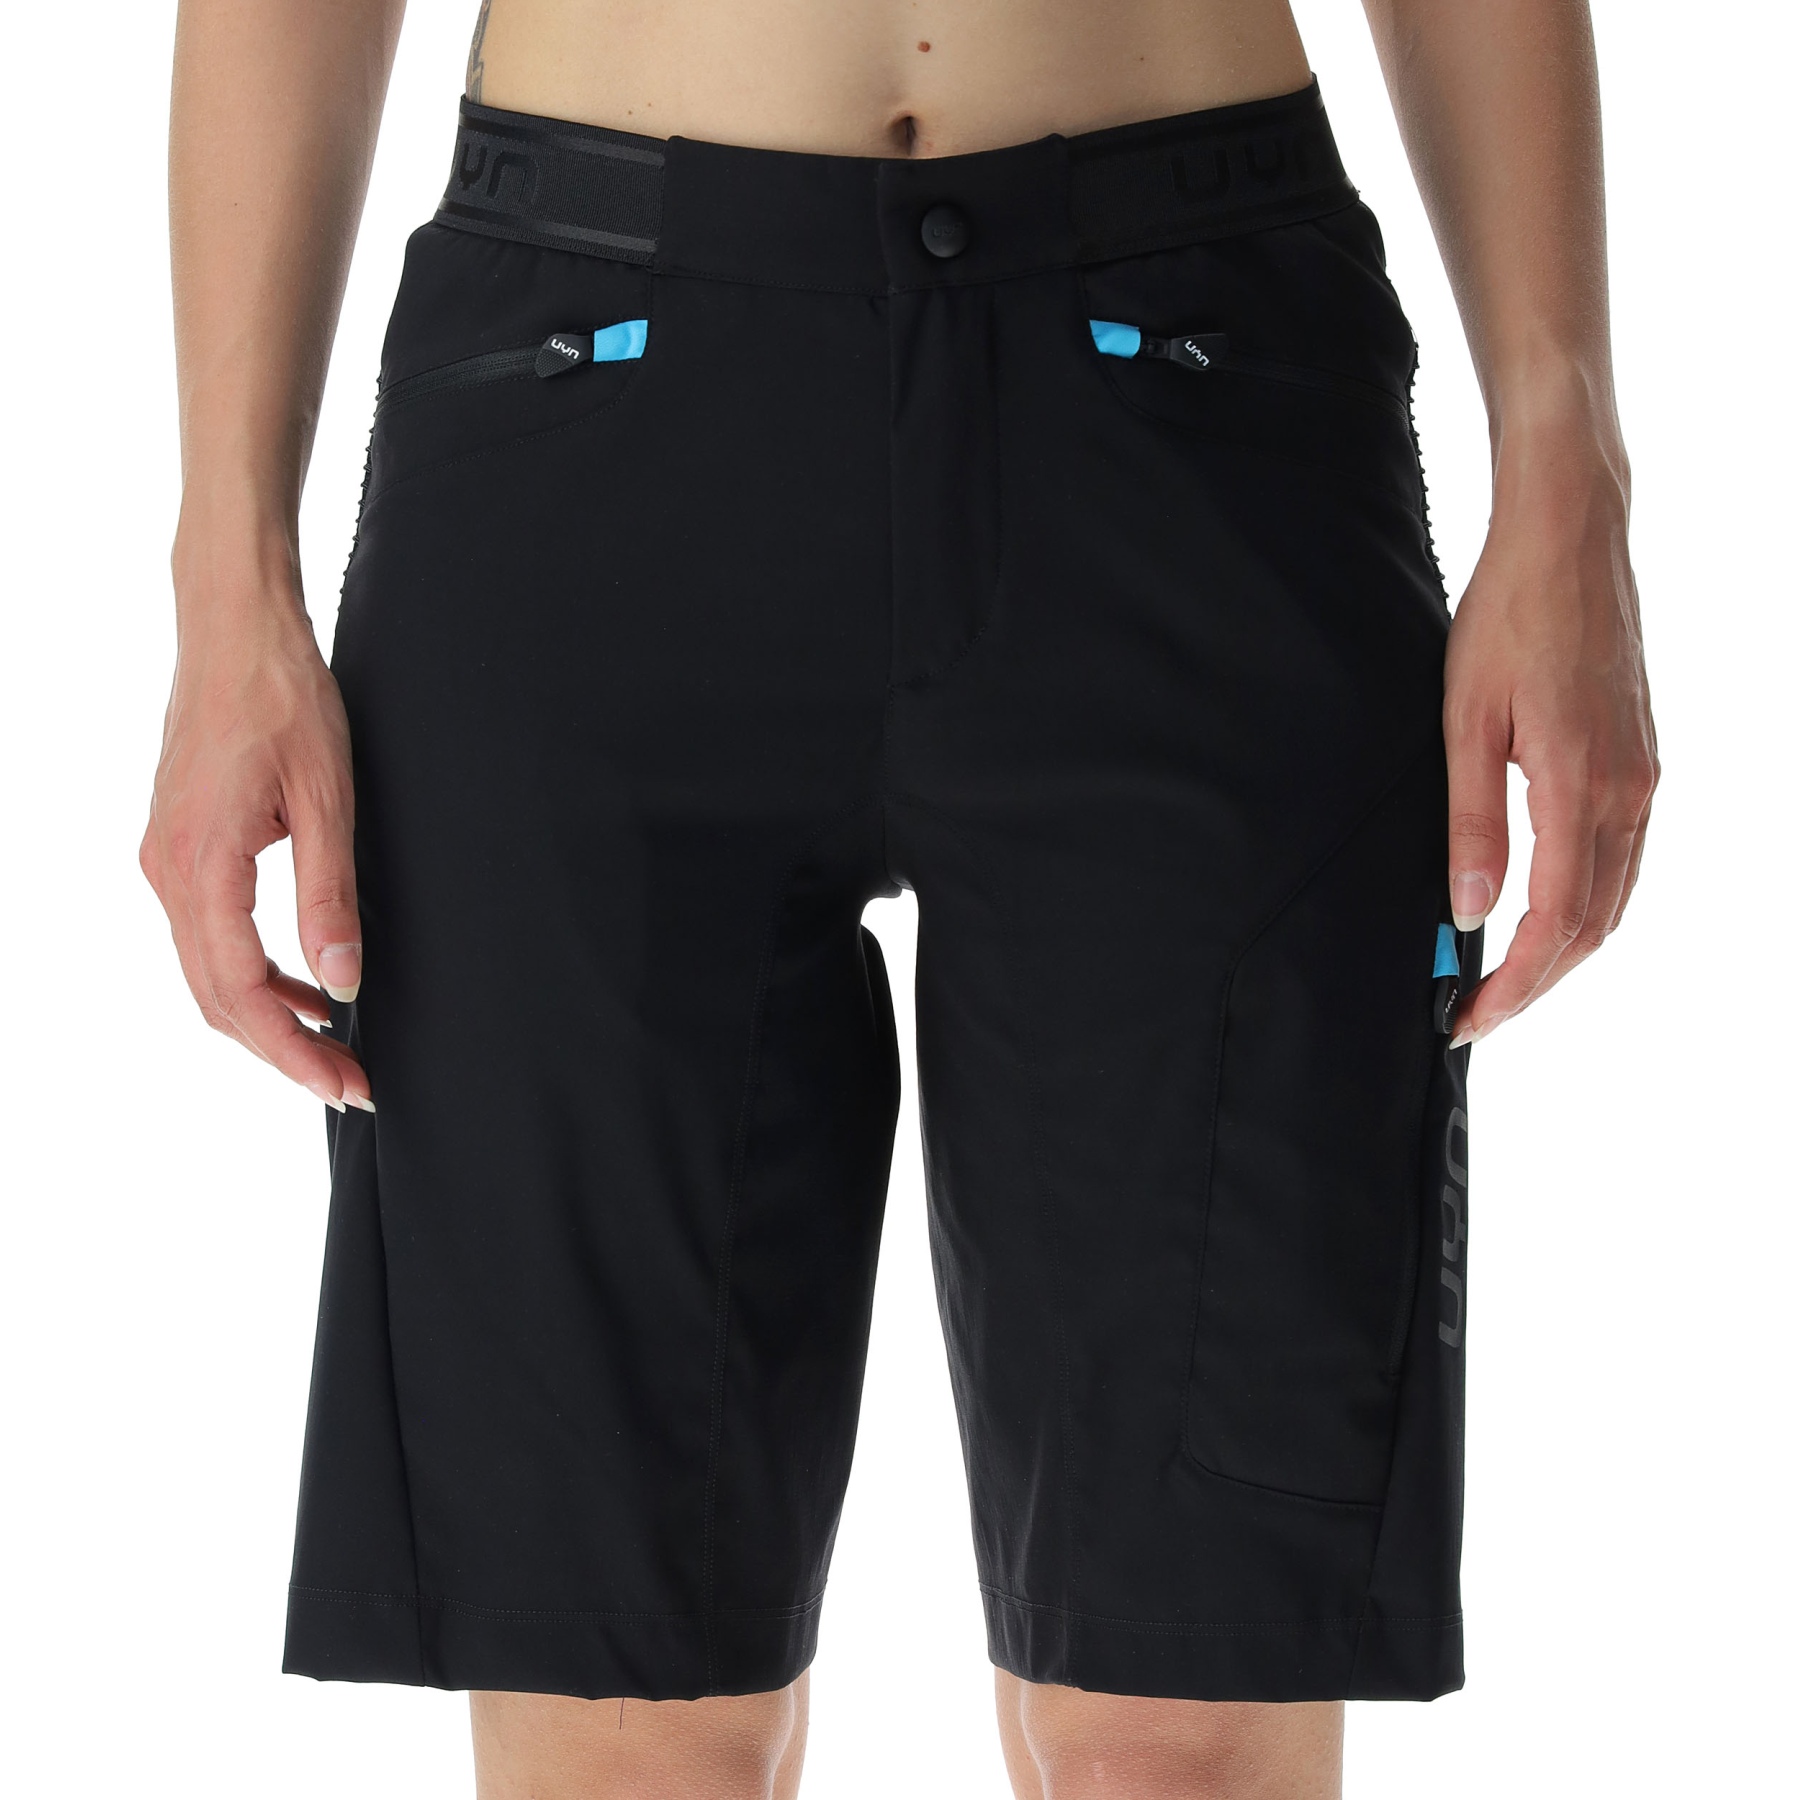 Produktbild von UYN Biking Trailblazer Shorts Damen - Black/Blue Danube